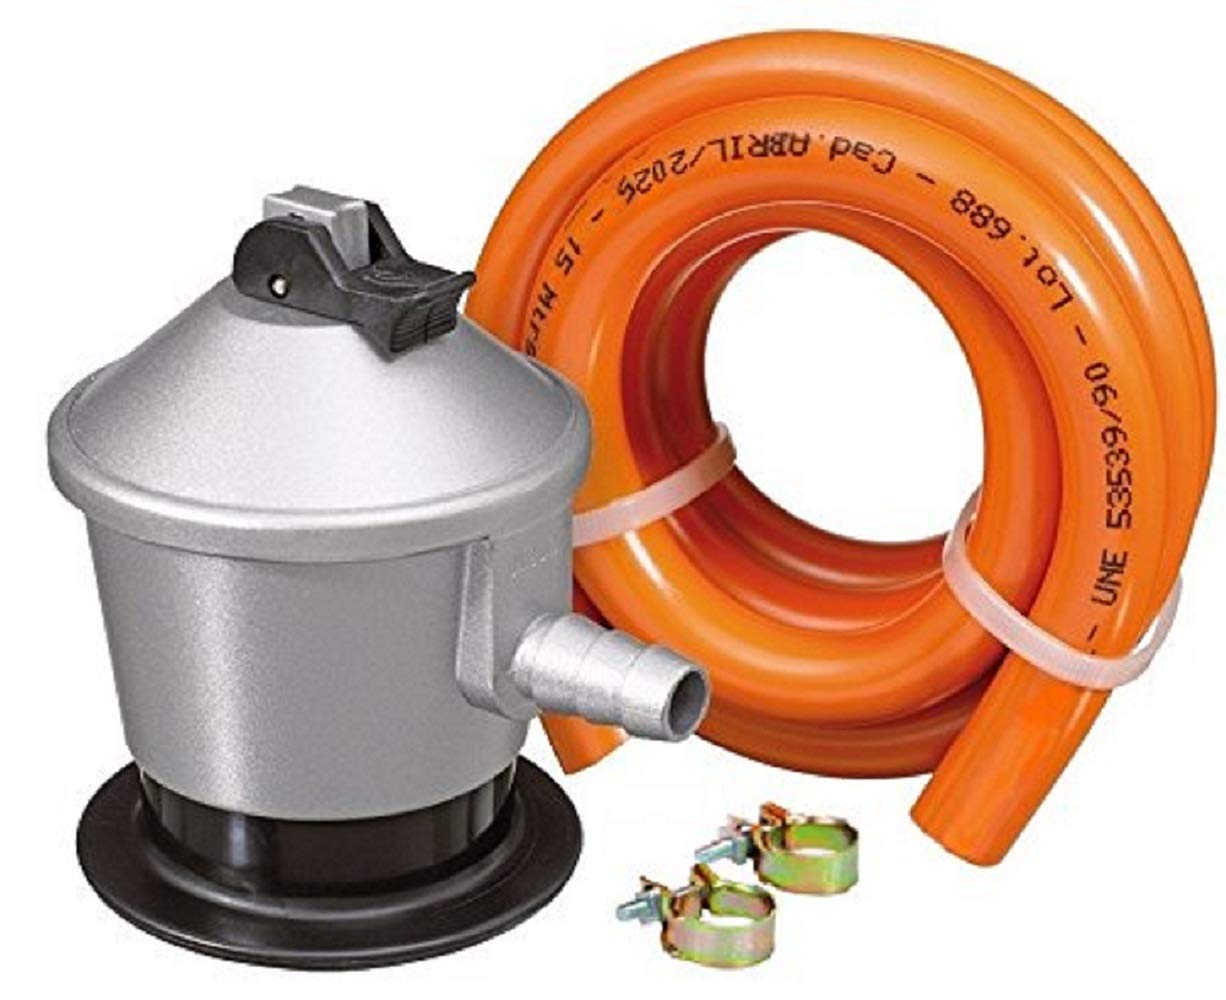 S&M 323300 Set Butan/Propan-Gasregler mit Sicherheitsventil + Gummischlauch 1,5 m + 2 Schellen, Grau/Orange, Estándar